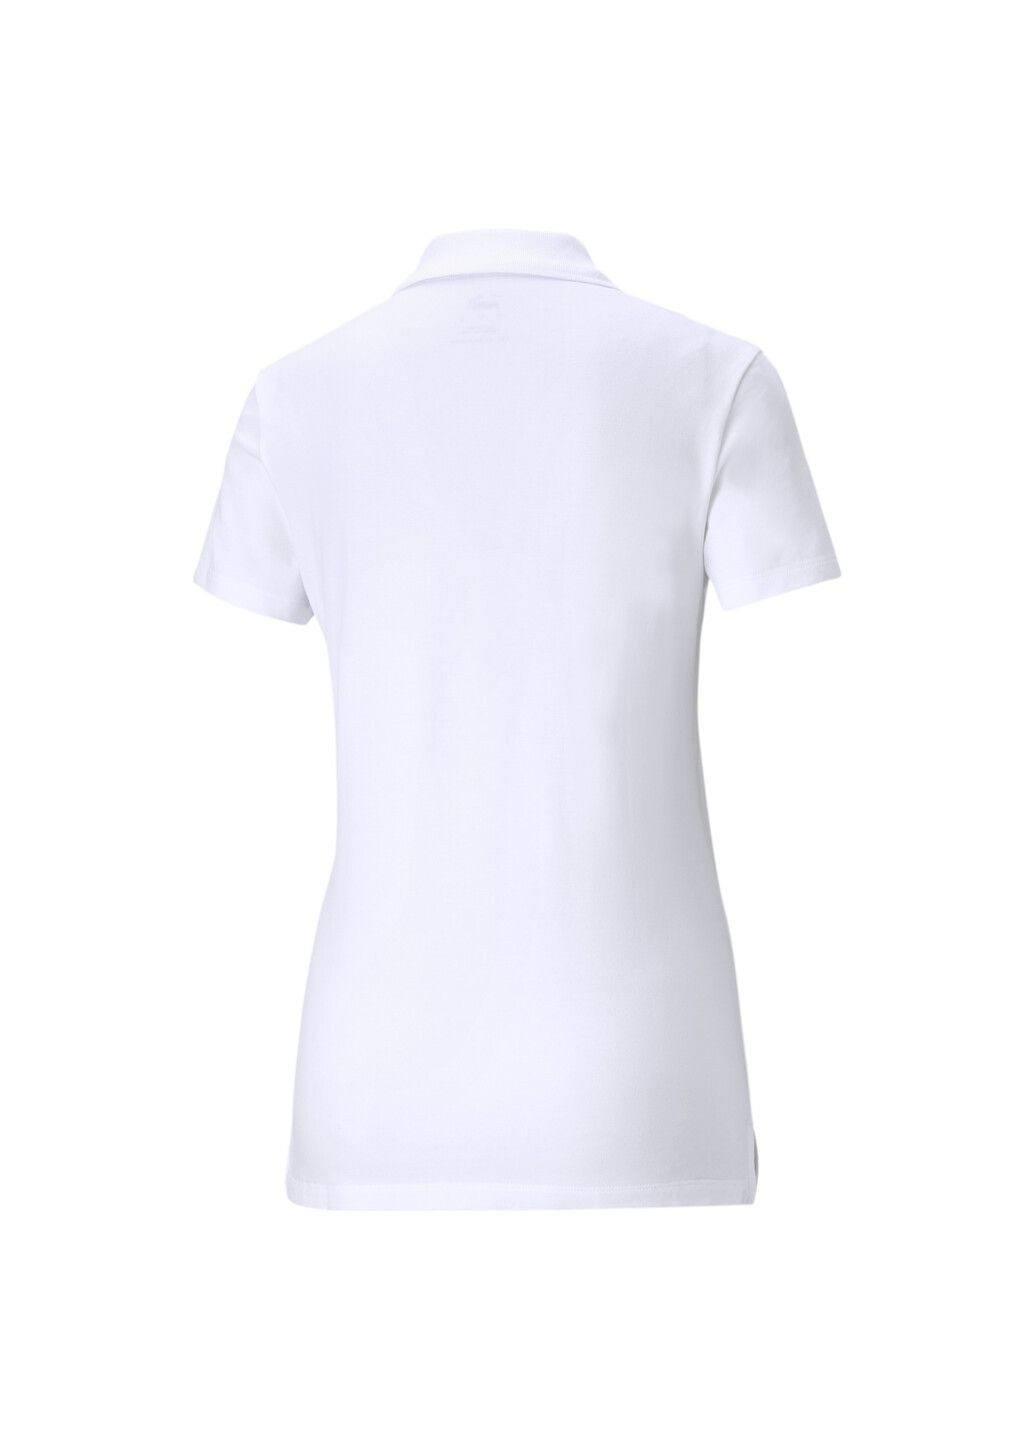 Белая женская футболка-футболка essentials women's polo shirt Puma однотонная